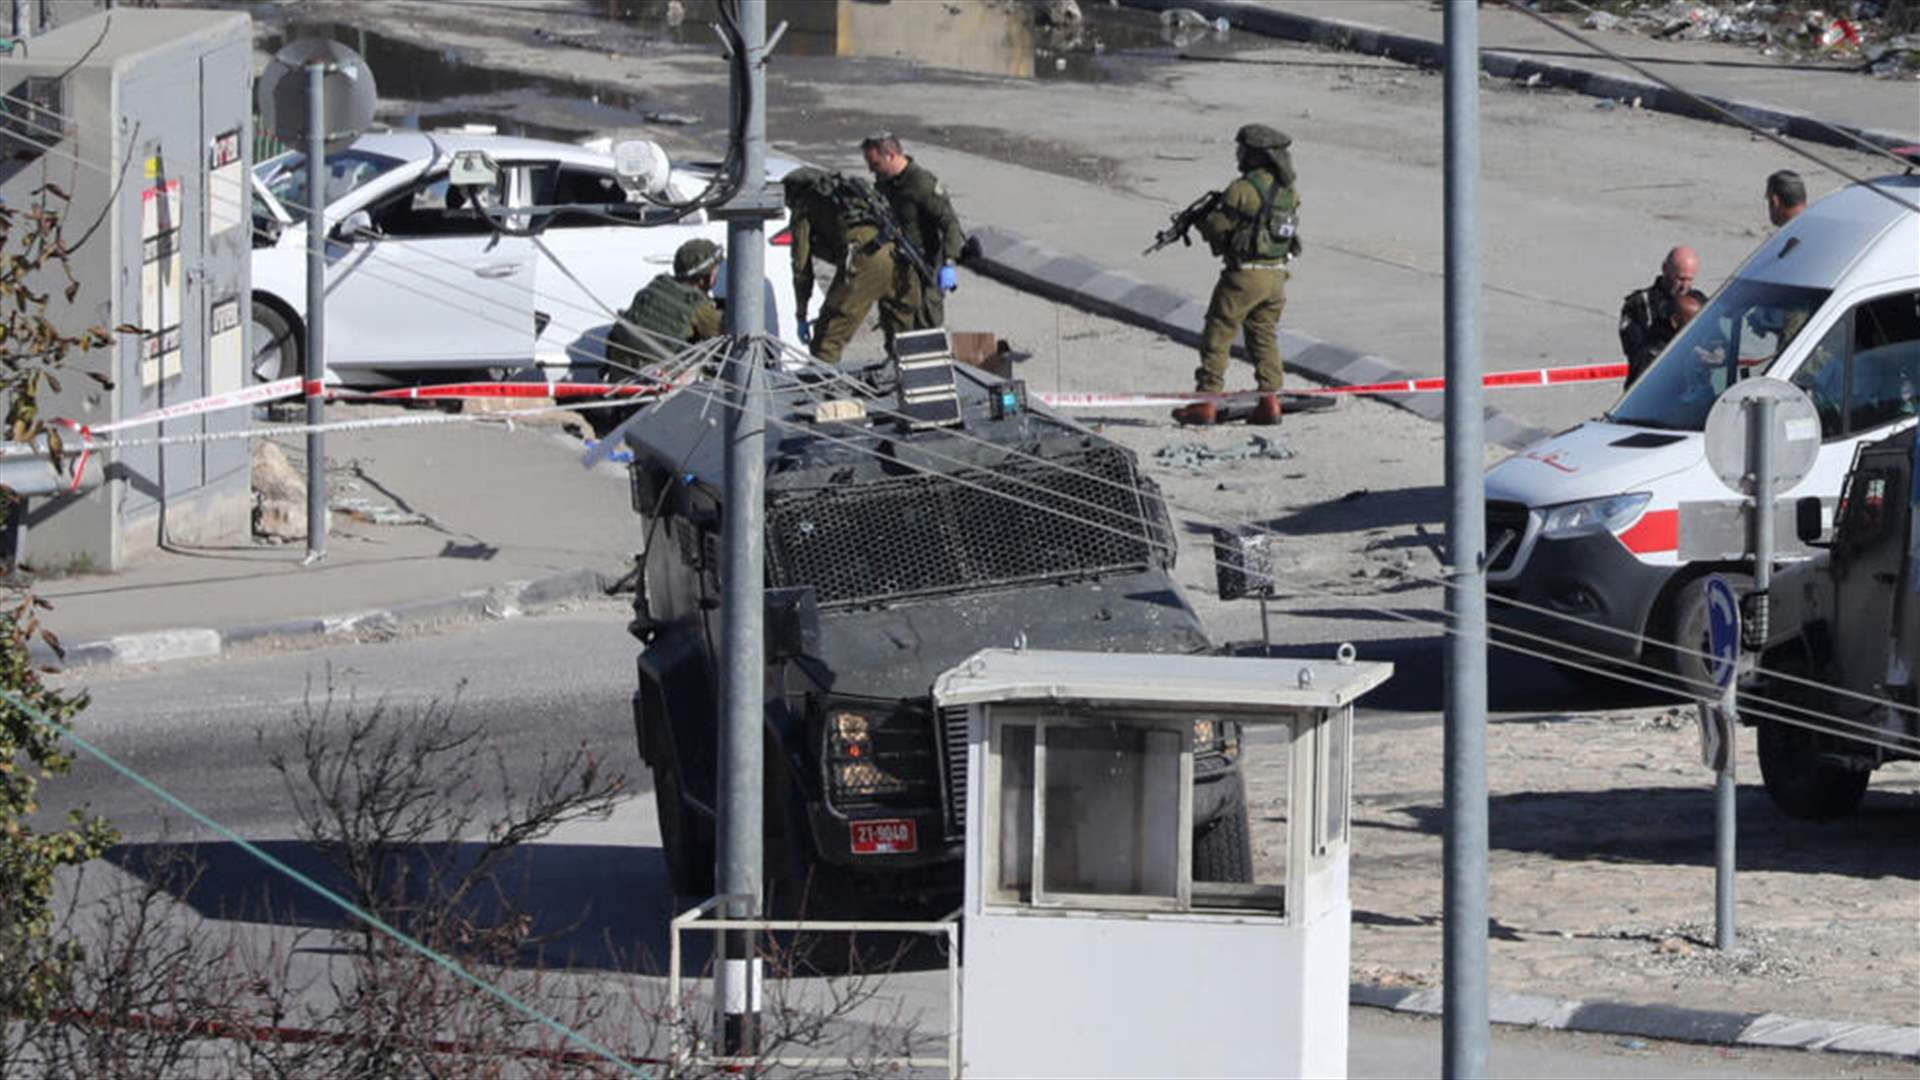 مقتل ستة شبان فلسطينيين بعملية عسكرية إسرائيلية بالضفة الغربية